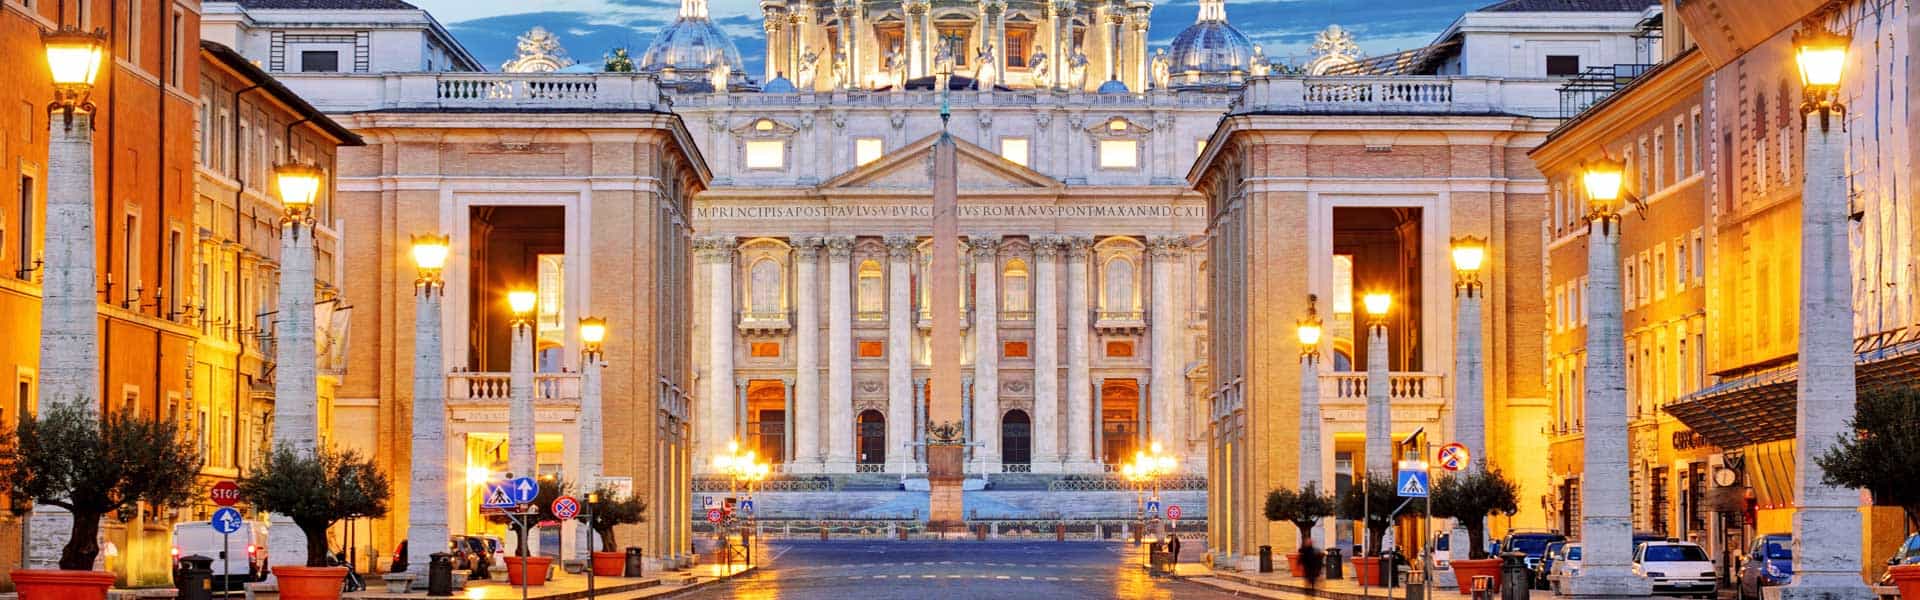 Heilige Stätte, sakrale Geschichte, Grabstätte von Petrus, des ersten Papstes der christlichen Geschichte: Der Vatikan in Rom